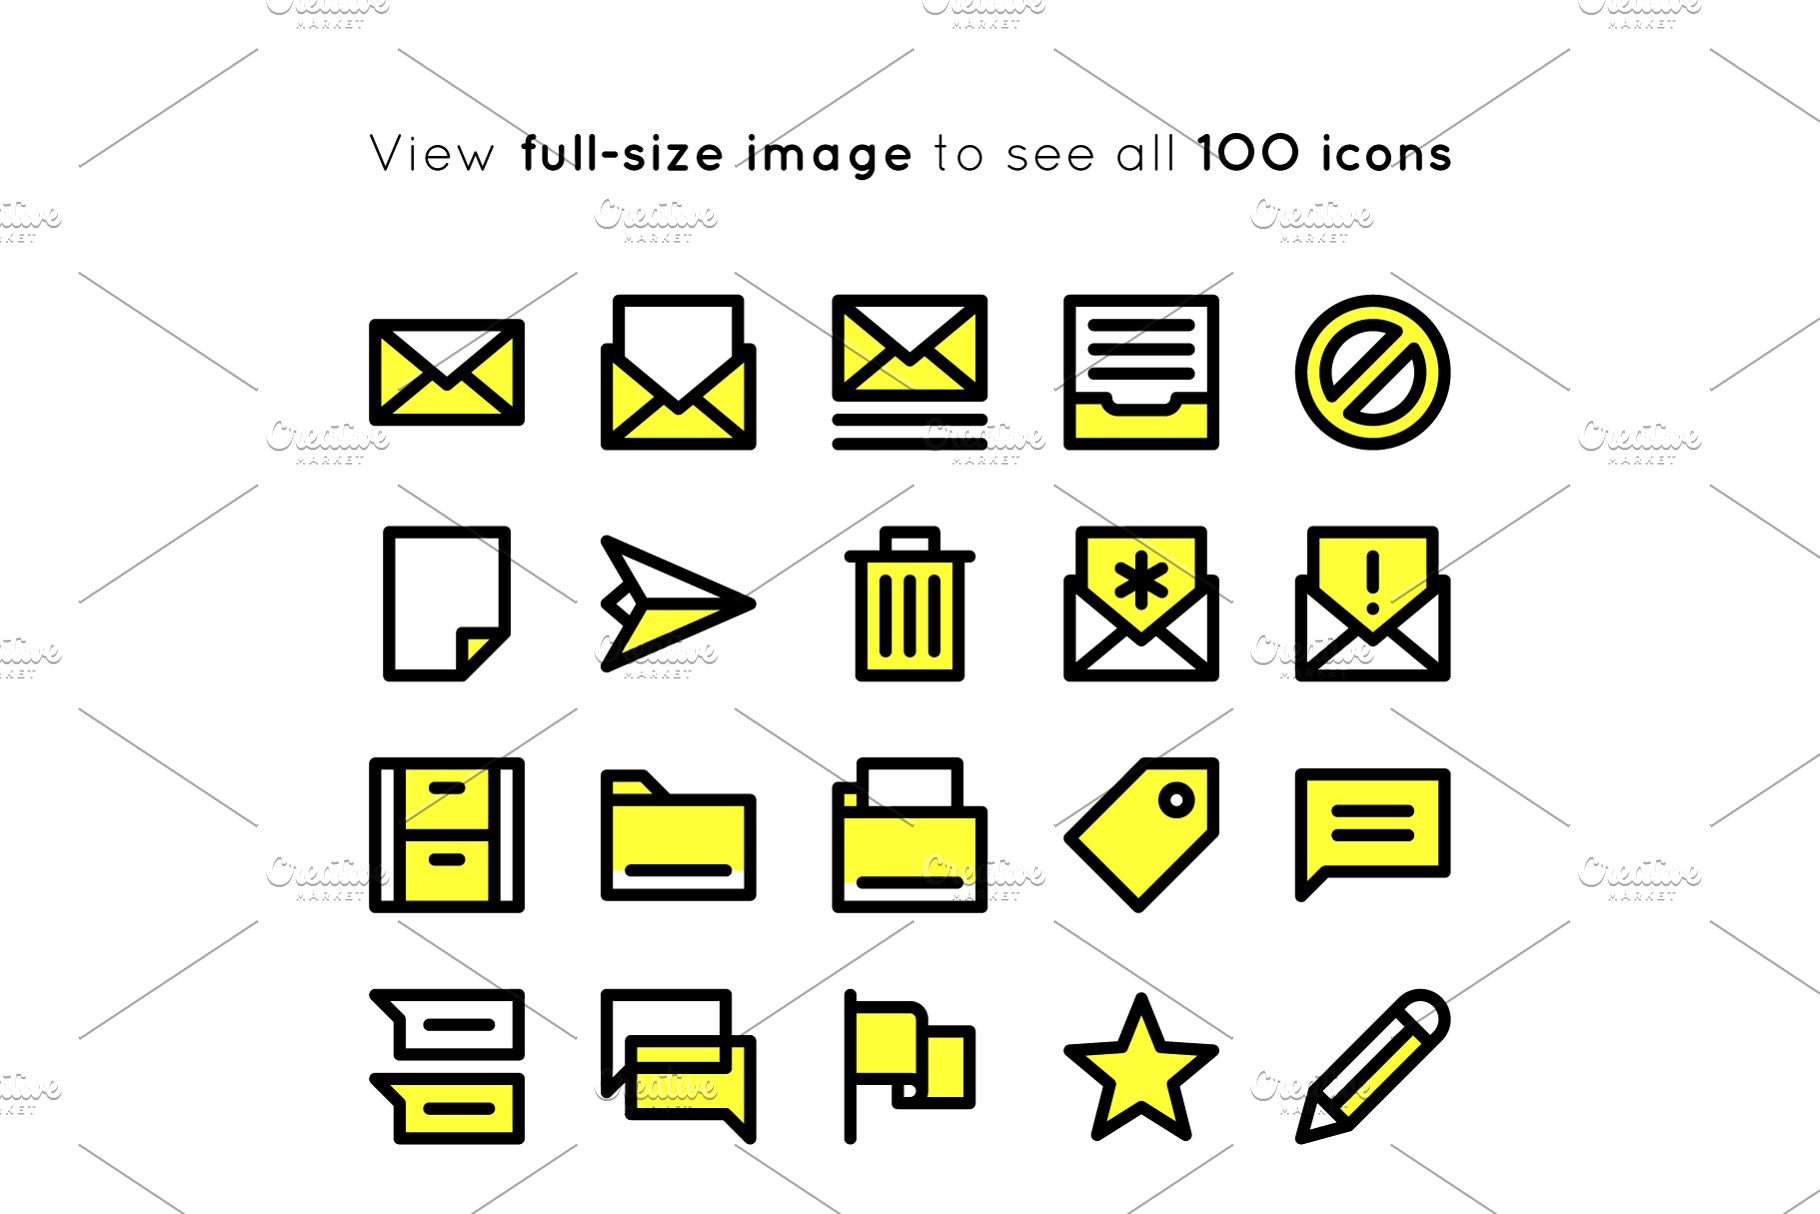 粗线条用户界面图标元素 BOLD icons User Interface essentials插图(3)